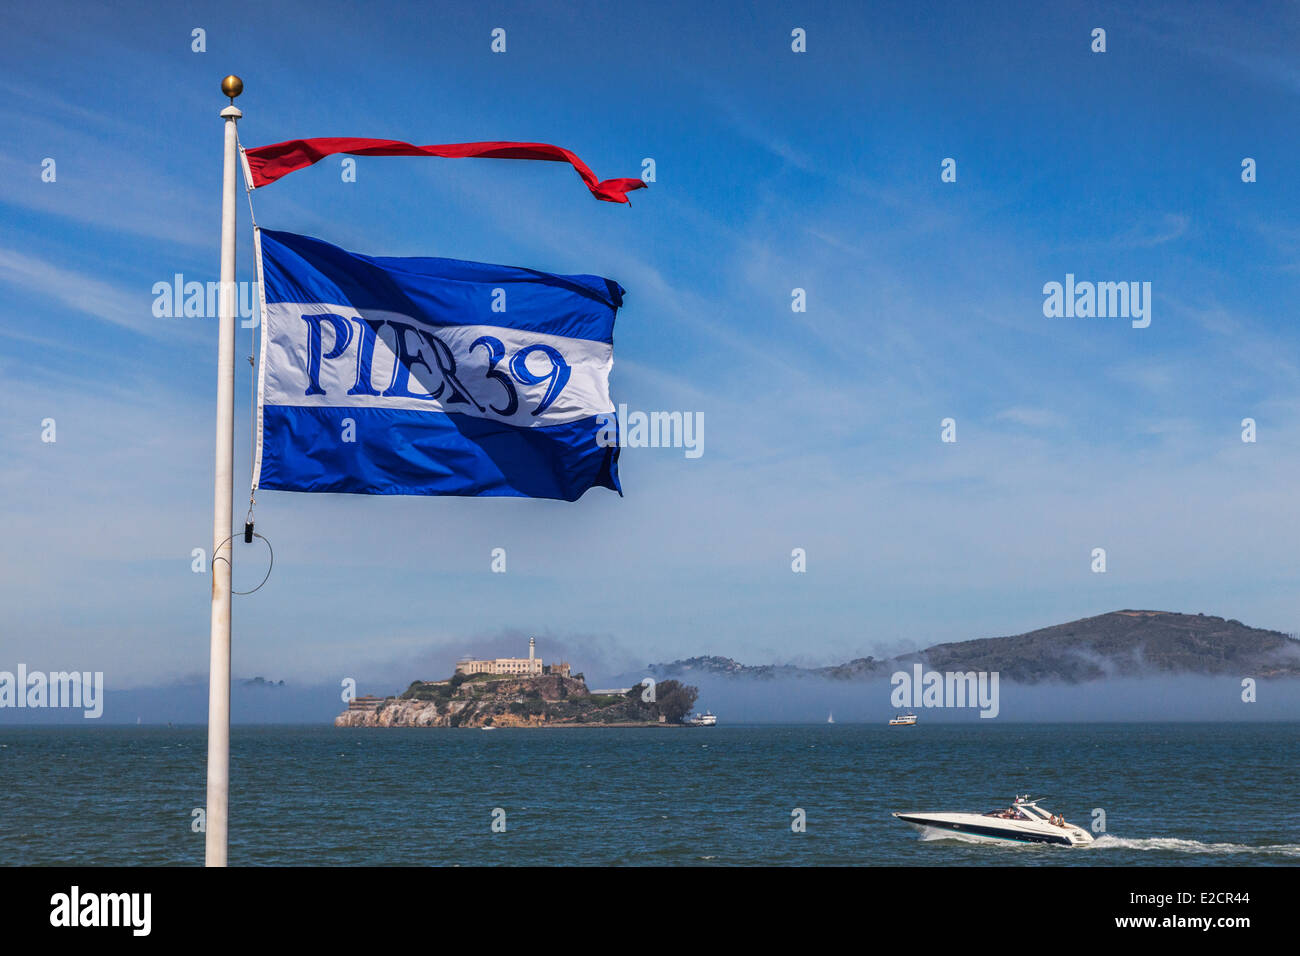 Alcatraz von Pier 39, San Francisco. Alcatraz ist Teil der Golden Gate National Recreation Area und wird verwaltet von... Stockfoto